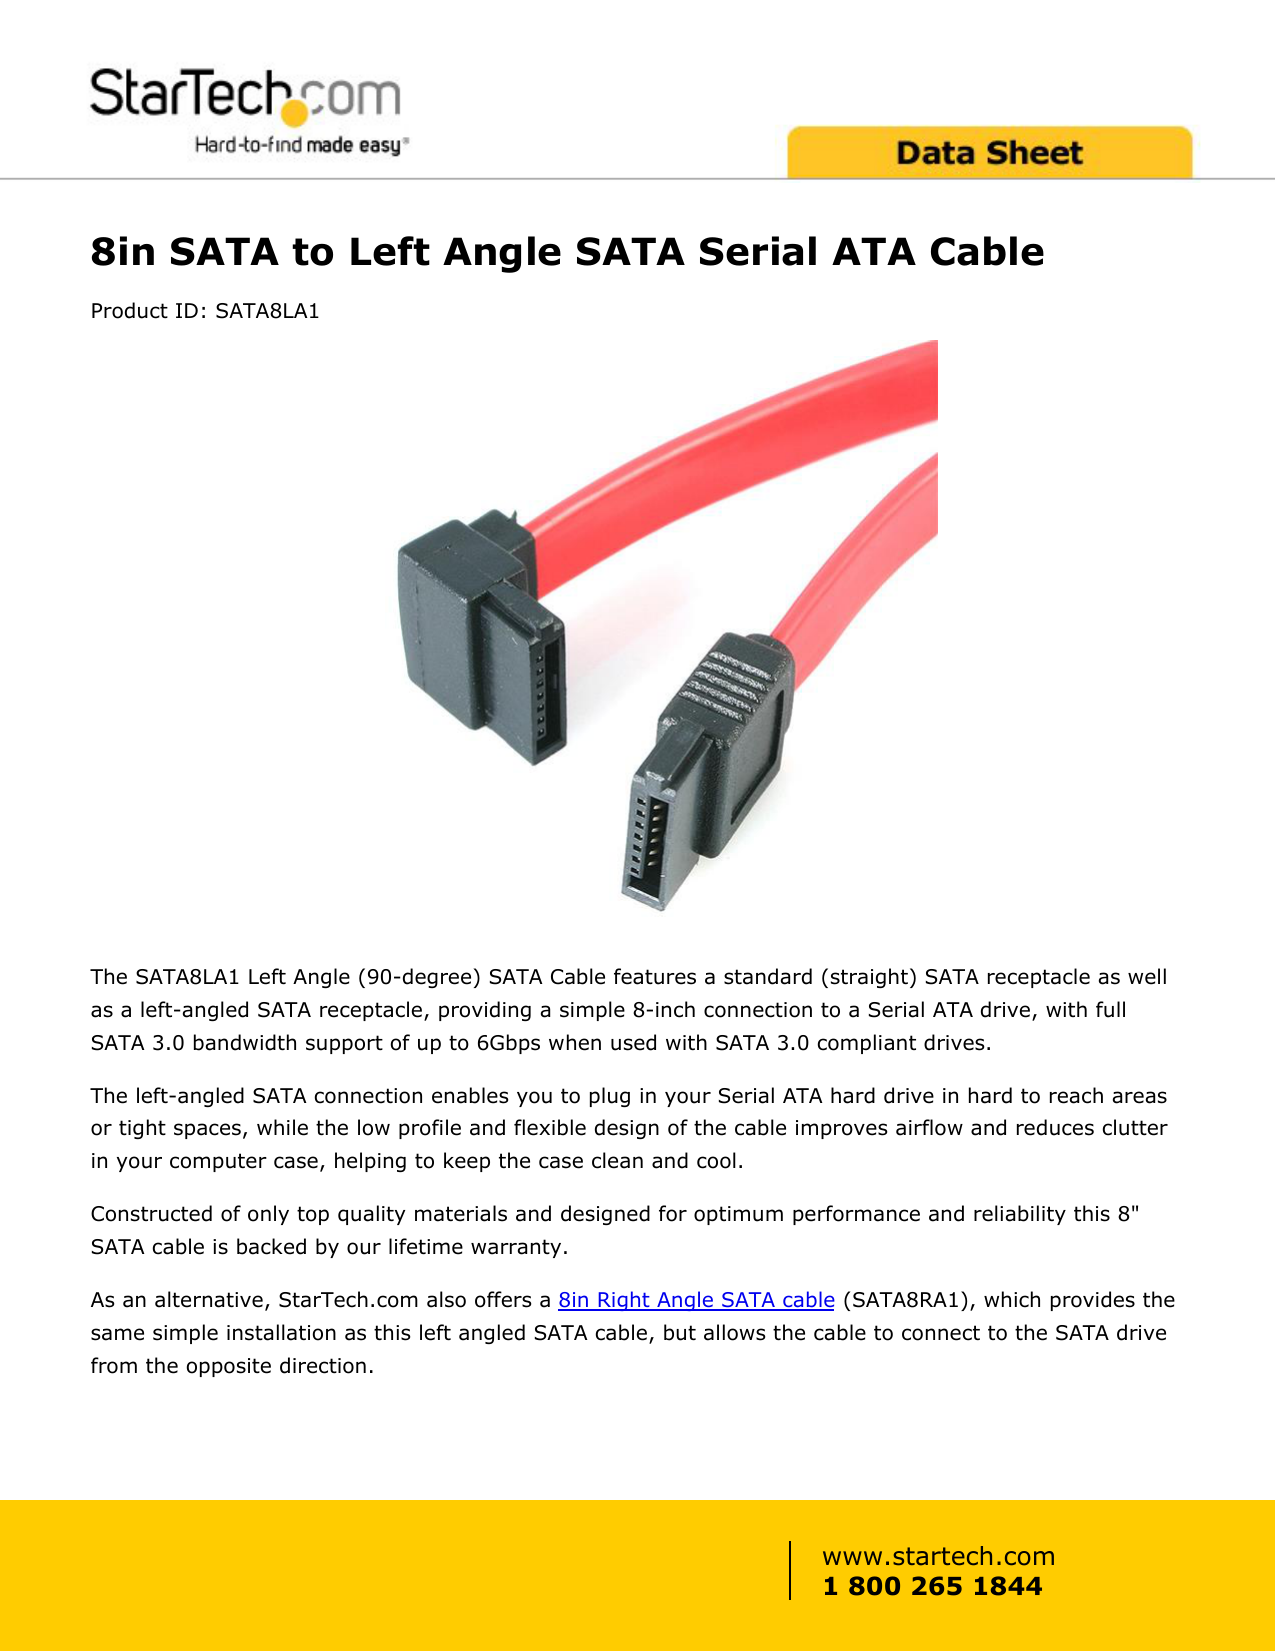 Right Angle SATA Cable StarTech.com 8in SATA to Right Angle SATA Serial ATA Cable 8 SATA Cable 8in SATA Cable SATA8RA1 